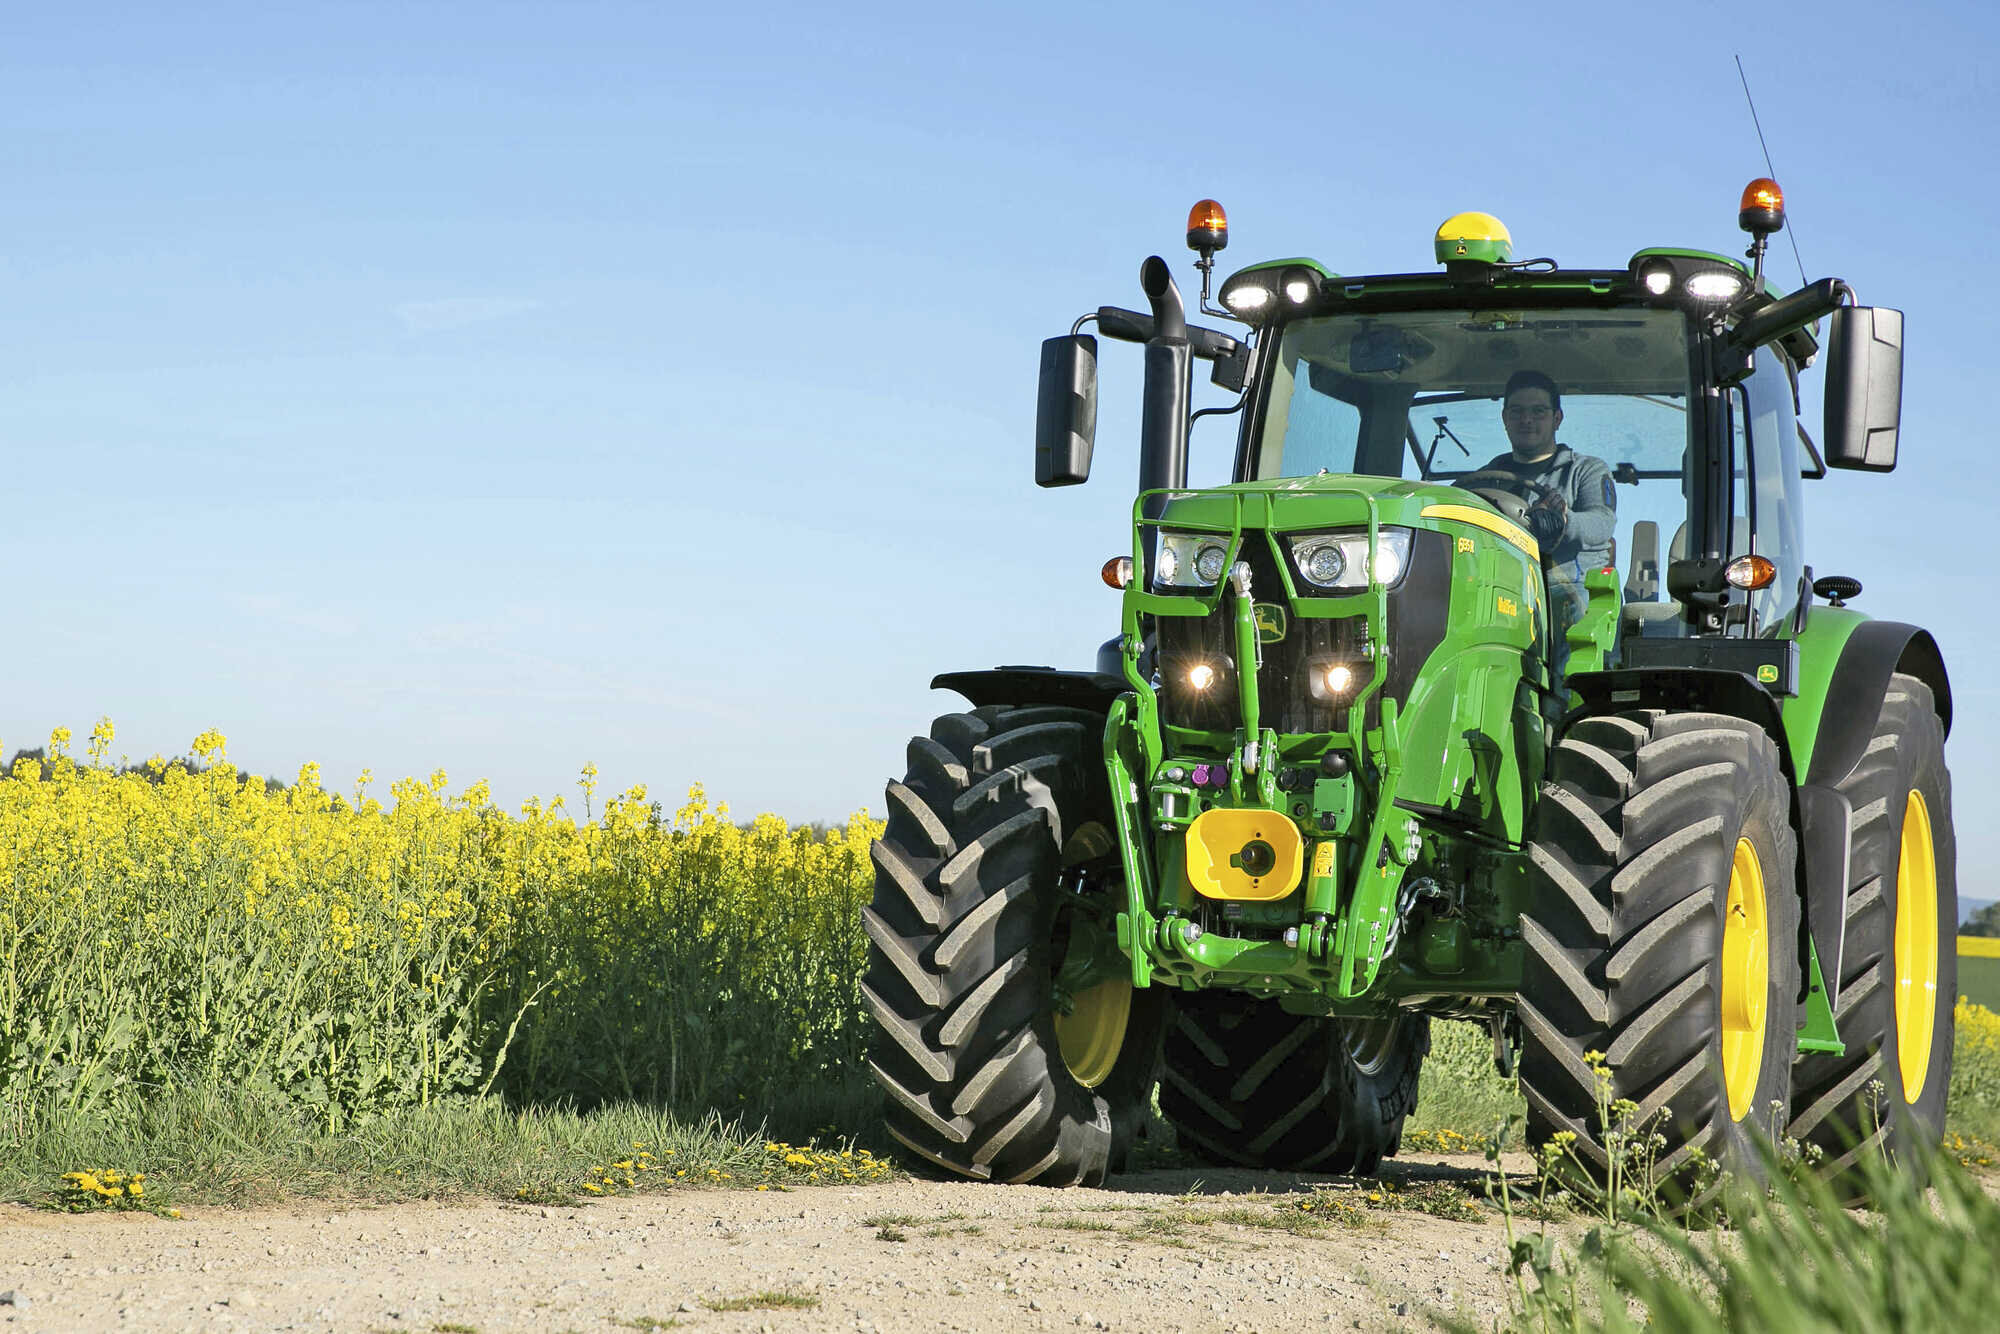 John Deere: Traktor tankt nicht nur Diesel – eine Alternative?